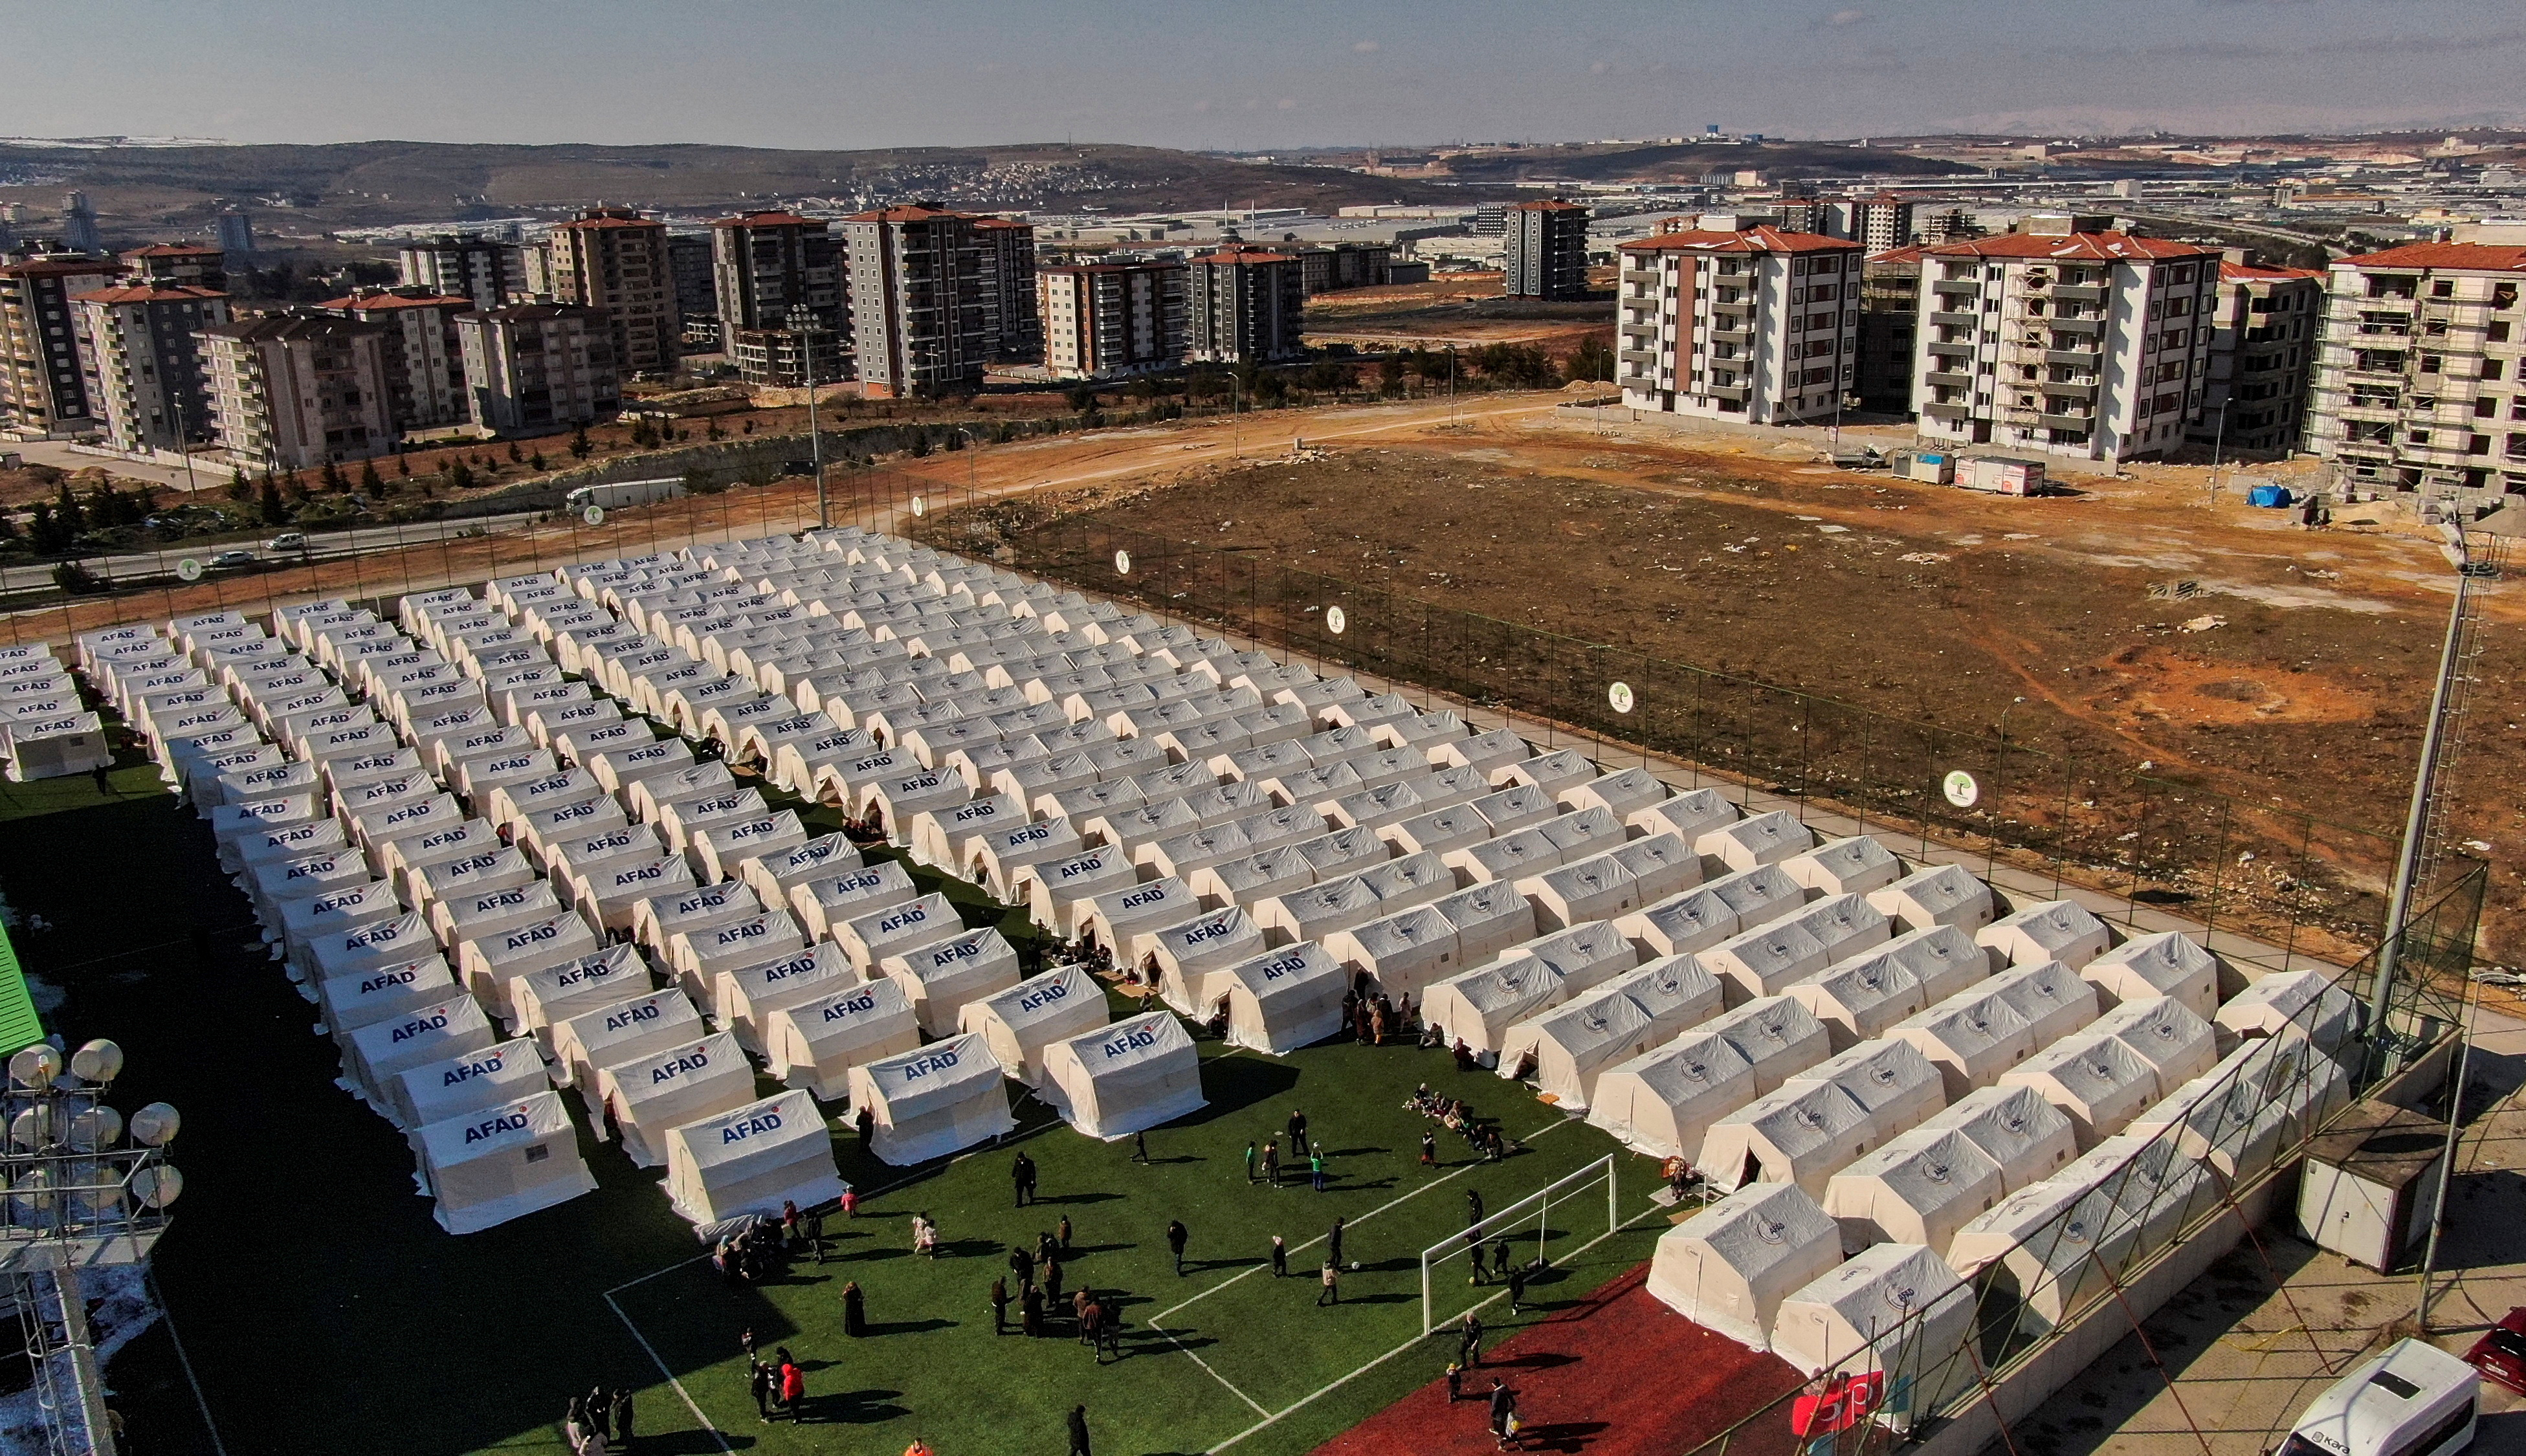 Tiendas de campaña de un centro de alojamiento temporal erigidas en un campo de fútbol para ayudar a las personas afectadas por el sismo en Gaziantep, Turquía (REUTERS/Irakli Gedenidze)